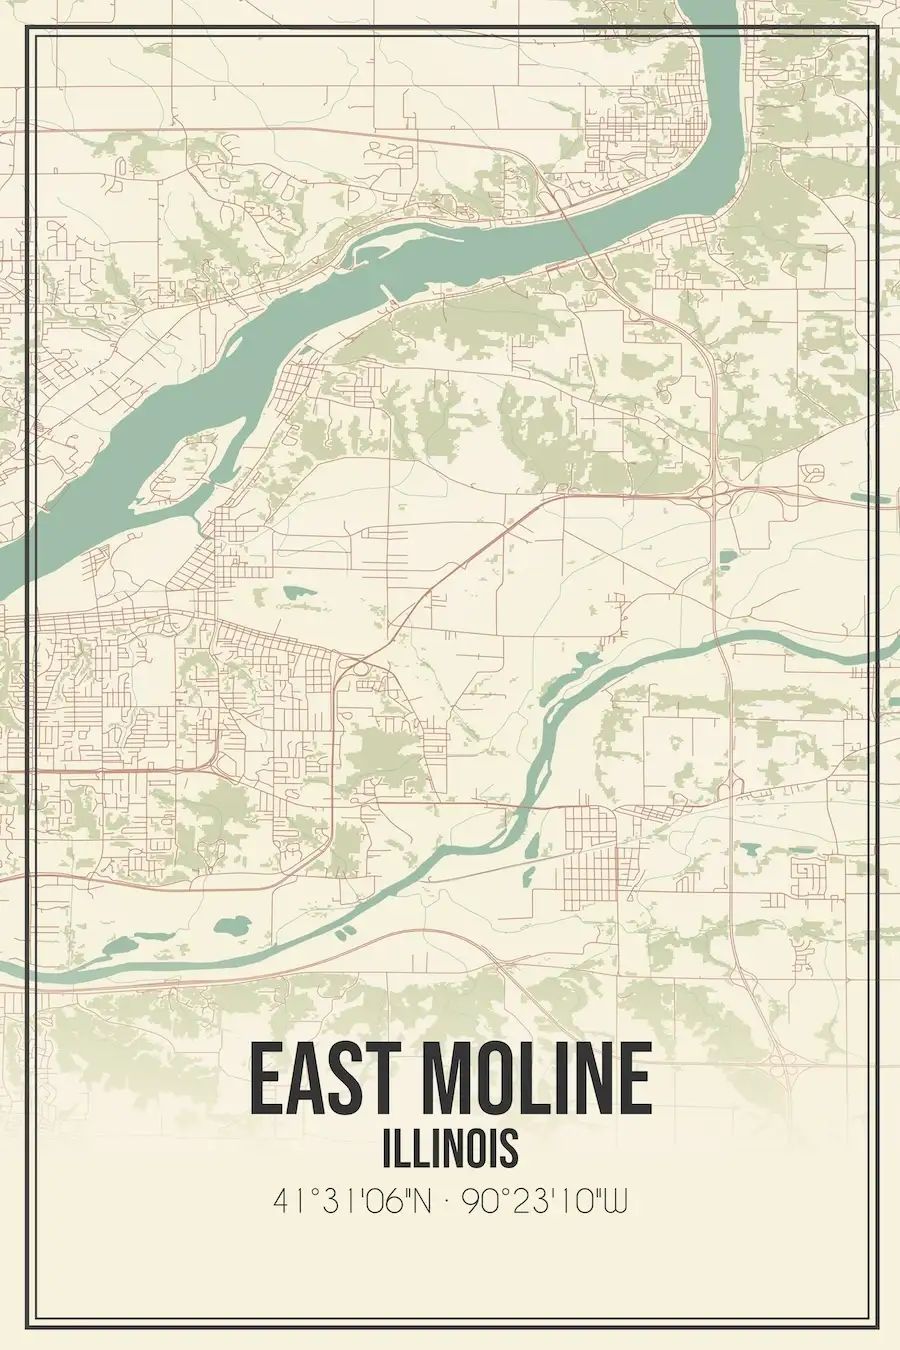 East Moline | Jim Whans Automotive Central